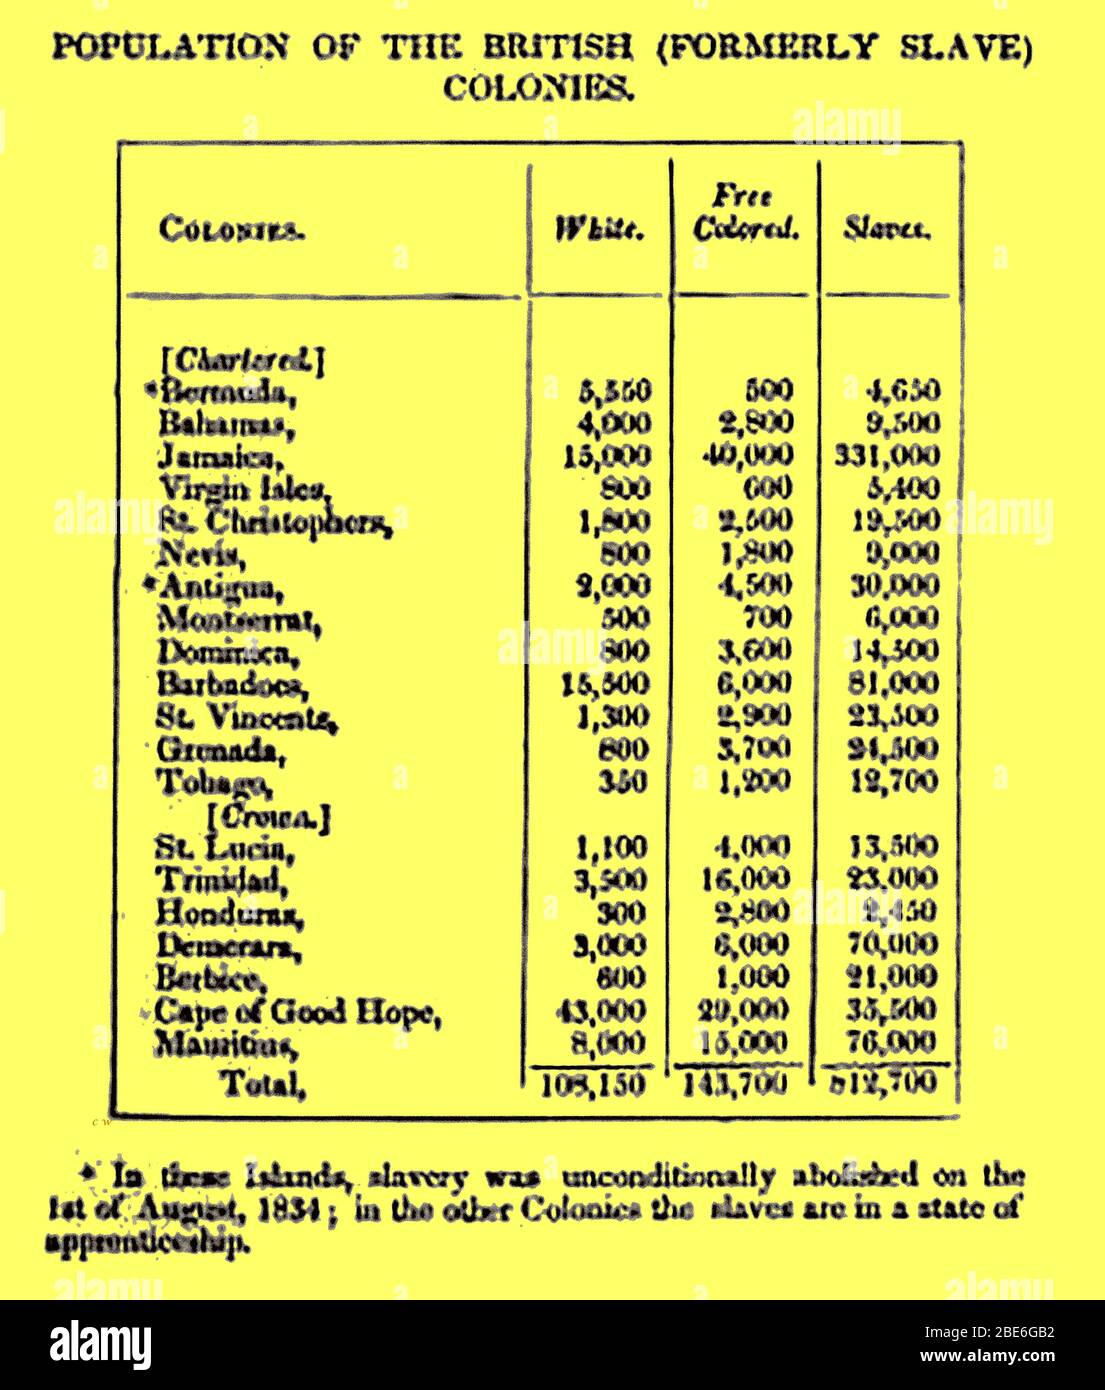 SLAVERY - una tabella stampata britannica del 1835 che elenca la popolazione delle colonie britanniche (precedentemente schiavi), elencando i gruppi bianchi, liberi colorati e schiavi. Foto Stock